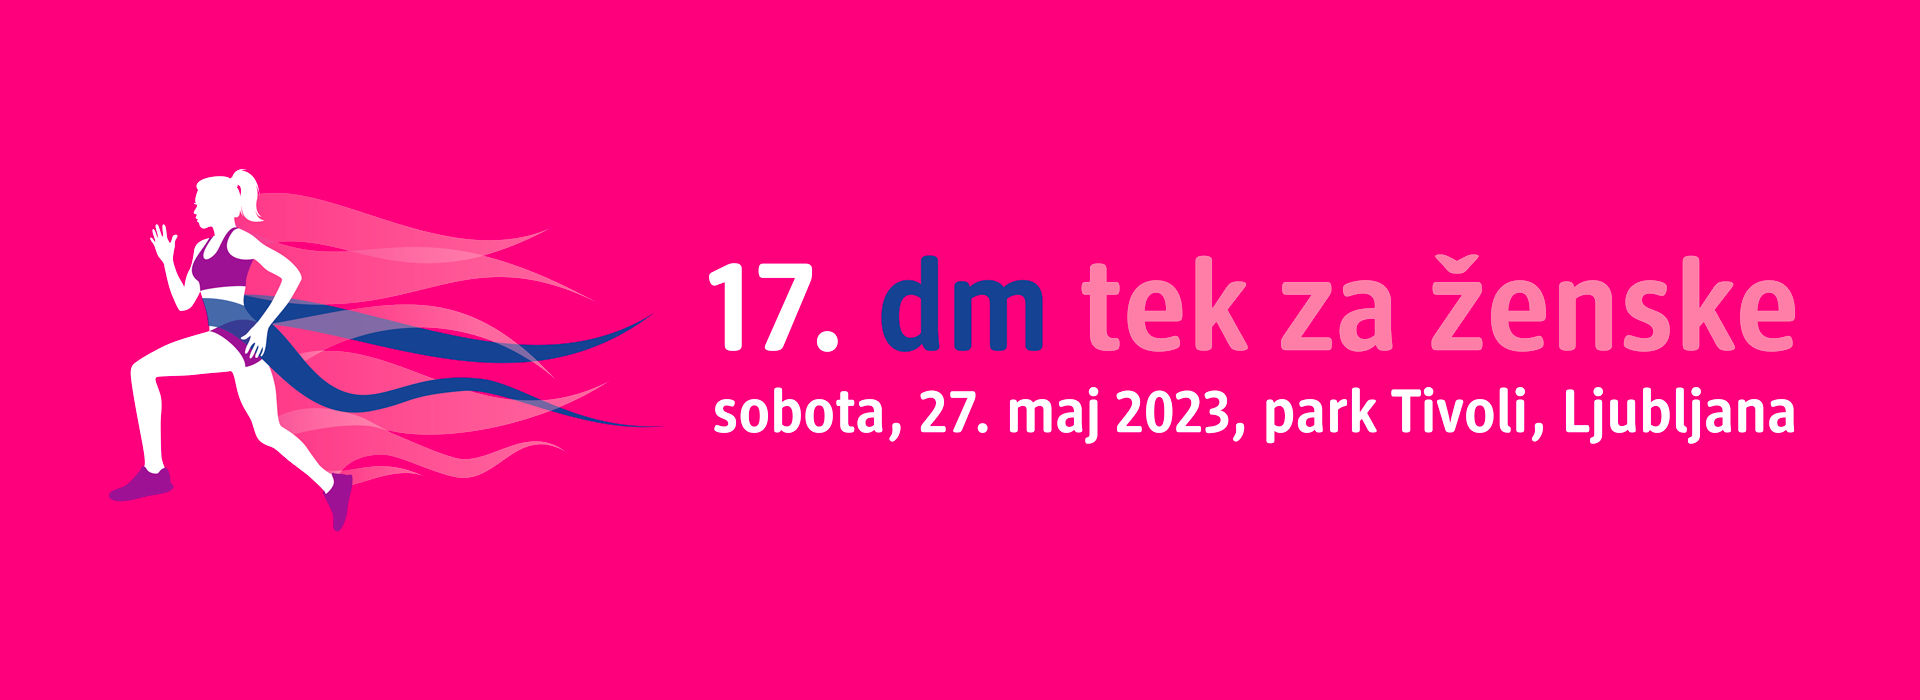 https://www.tekzazenske.si/